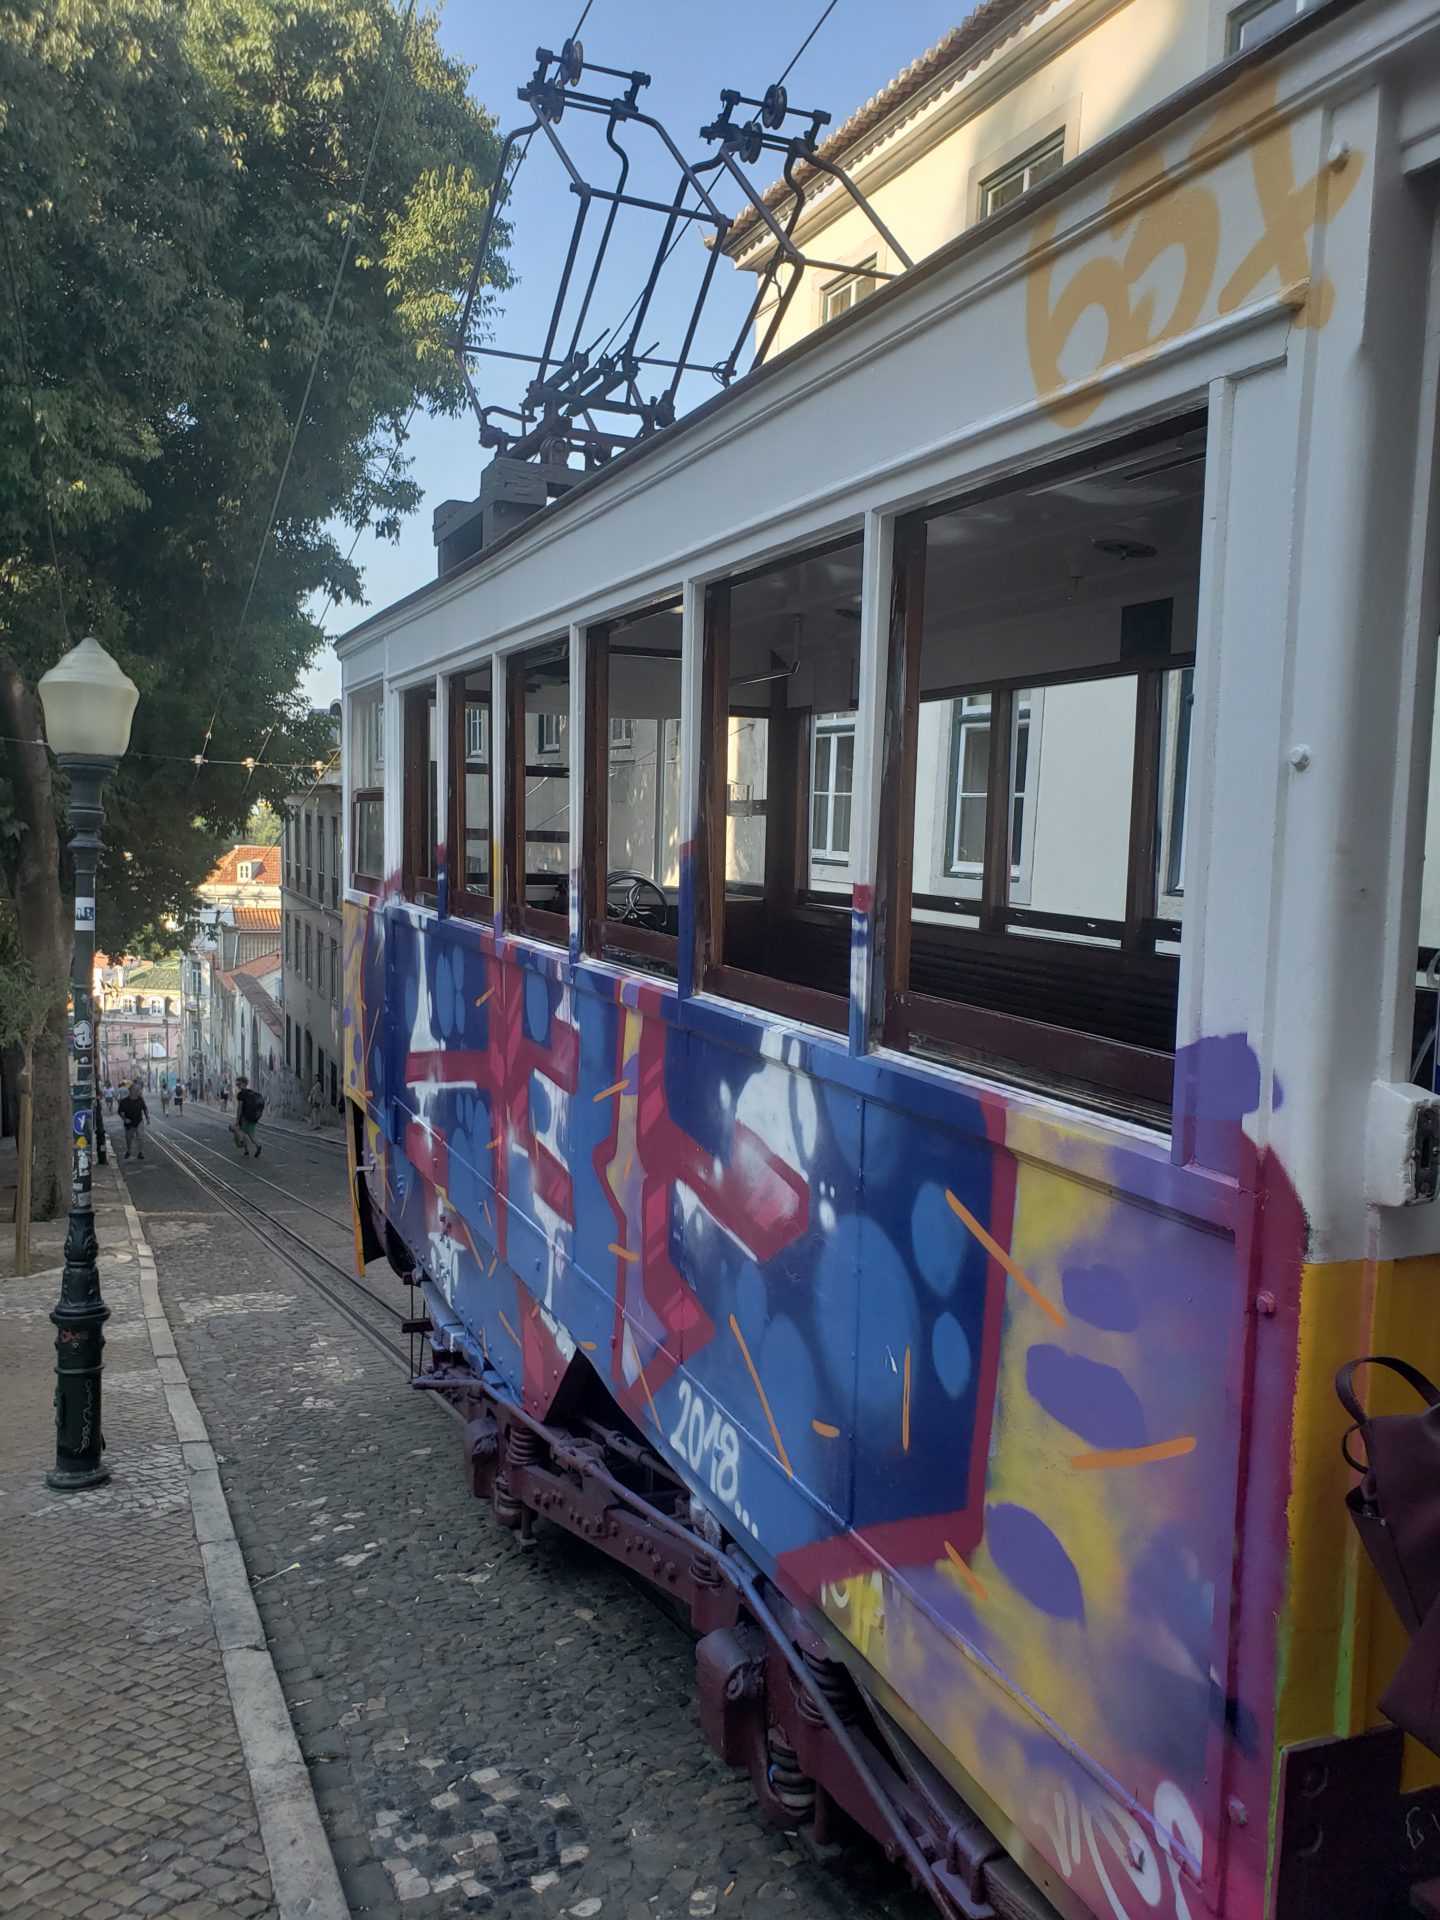 a trolley car with graffiti on it